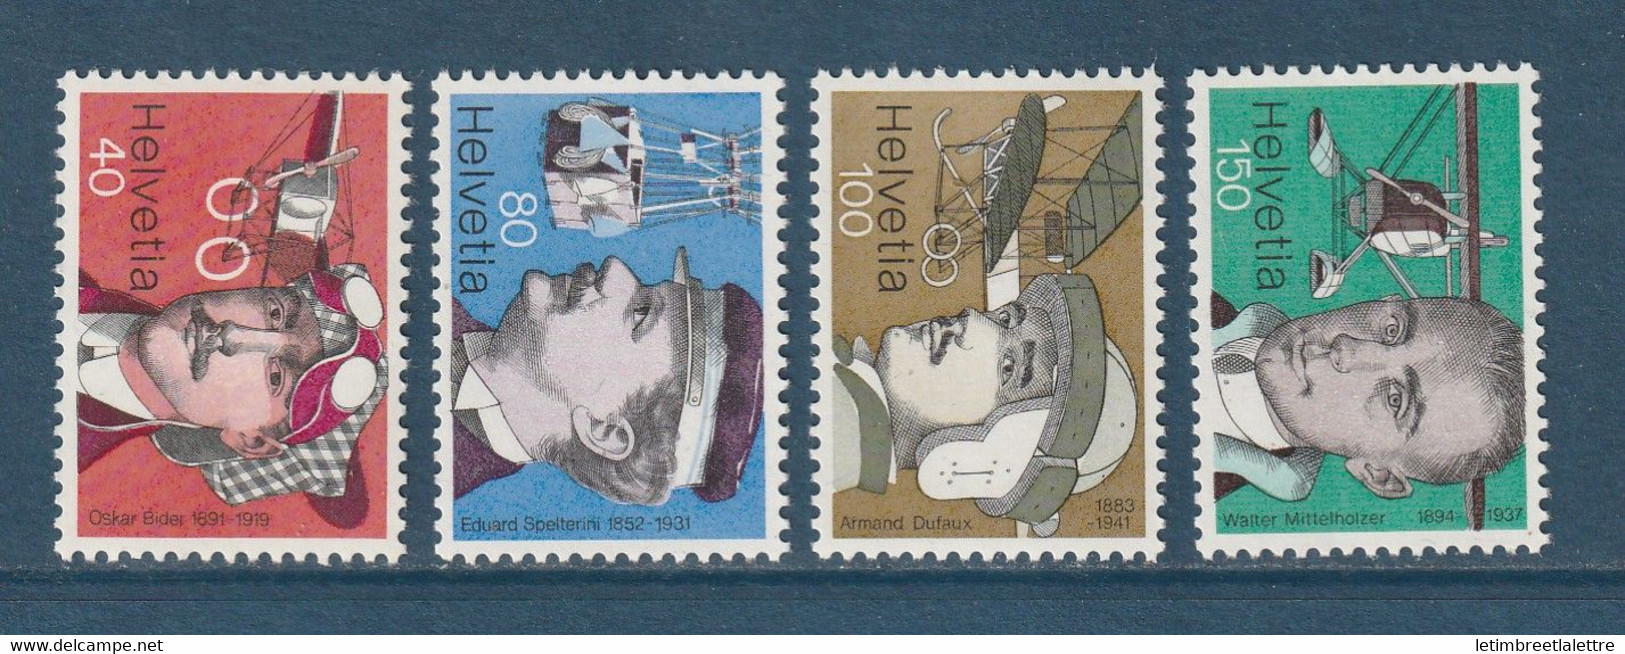 ⭐ Suisse - YT N° 1017 à 1020 ** - Neuf Sans Charnière - 1977 ⭐ - Unused Stamps